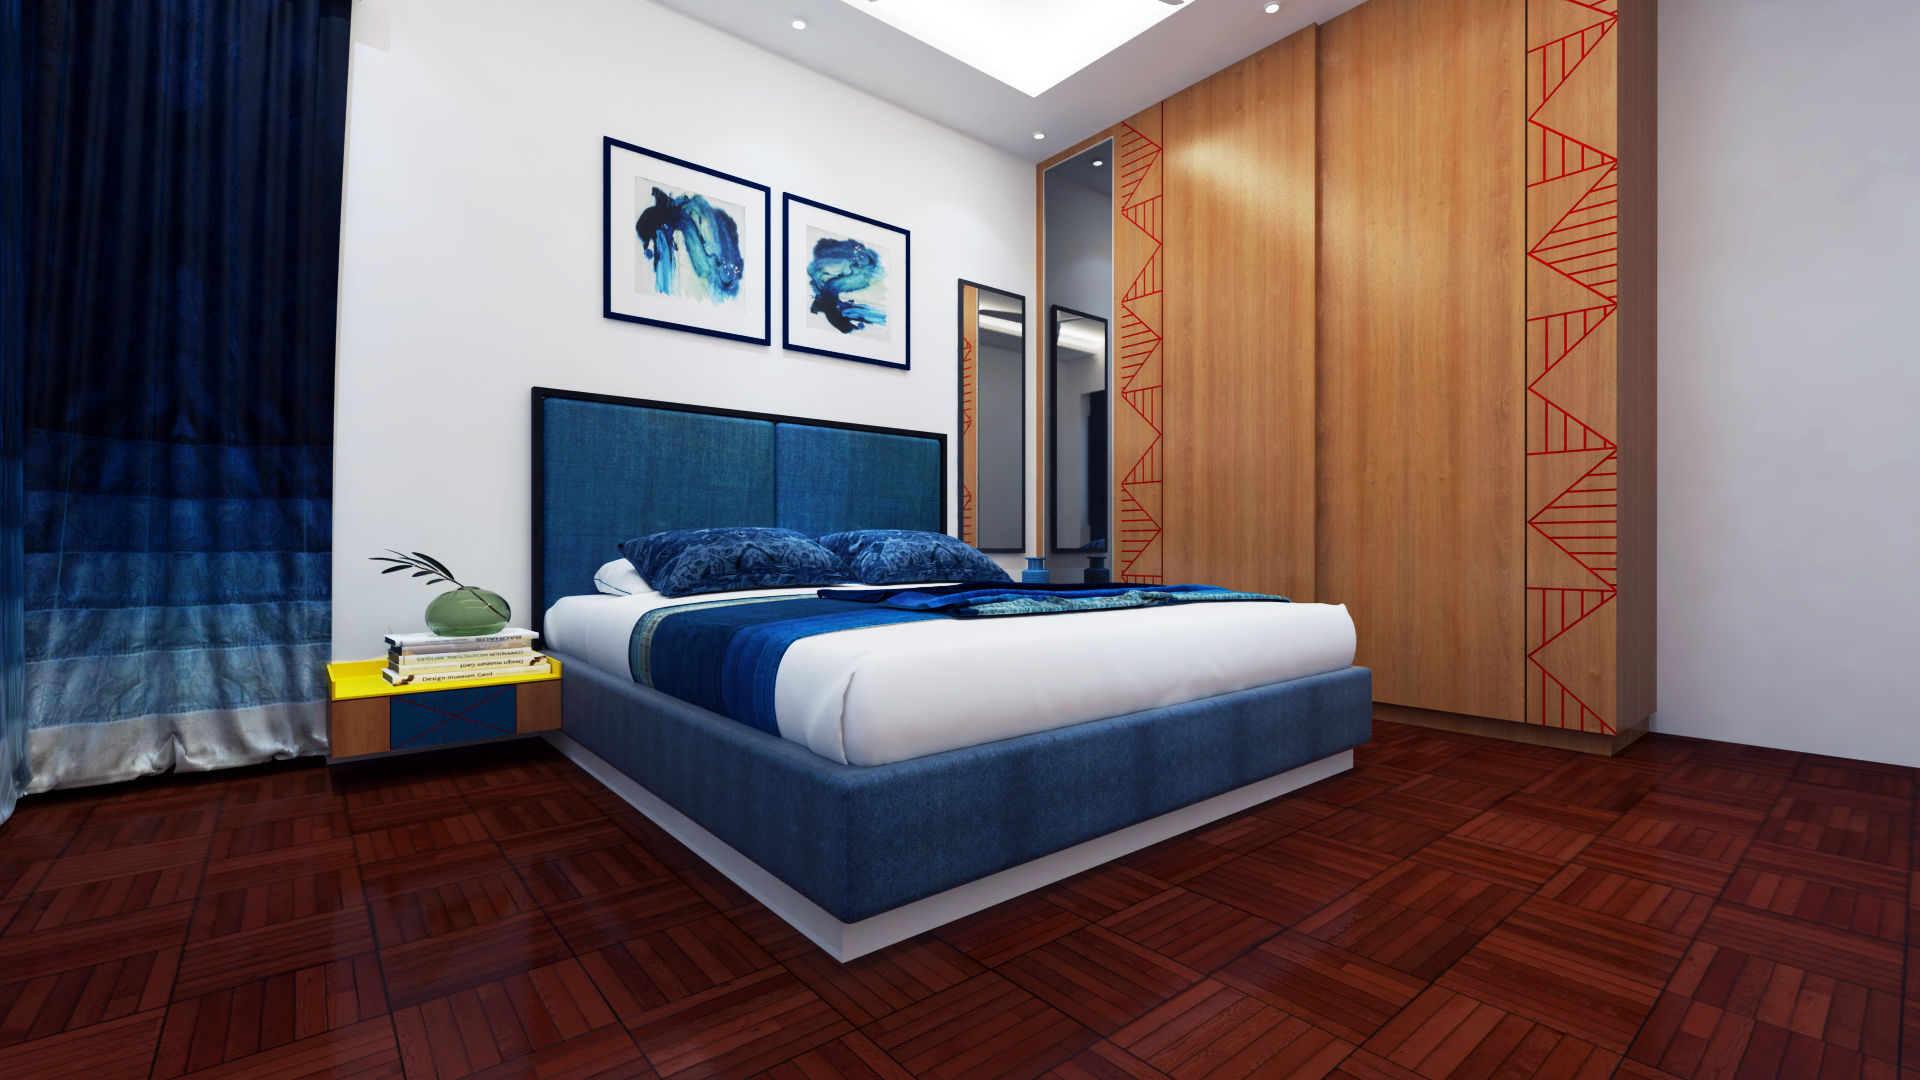 2 bedrooms , The Red Brick Wall The Red Brick Wall Dormitorios de estilo minimalista Clósets y cómodas